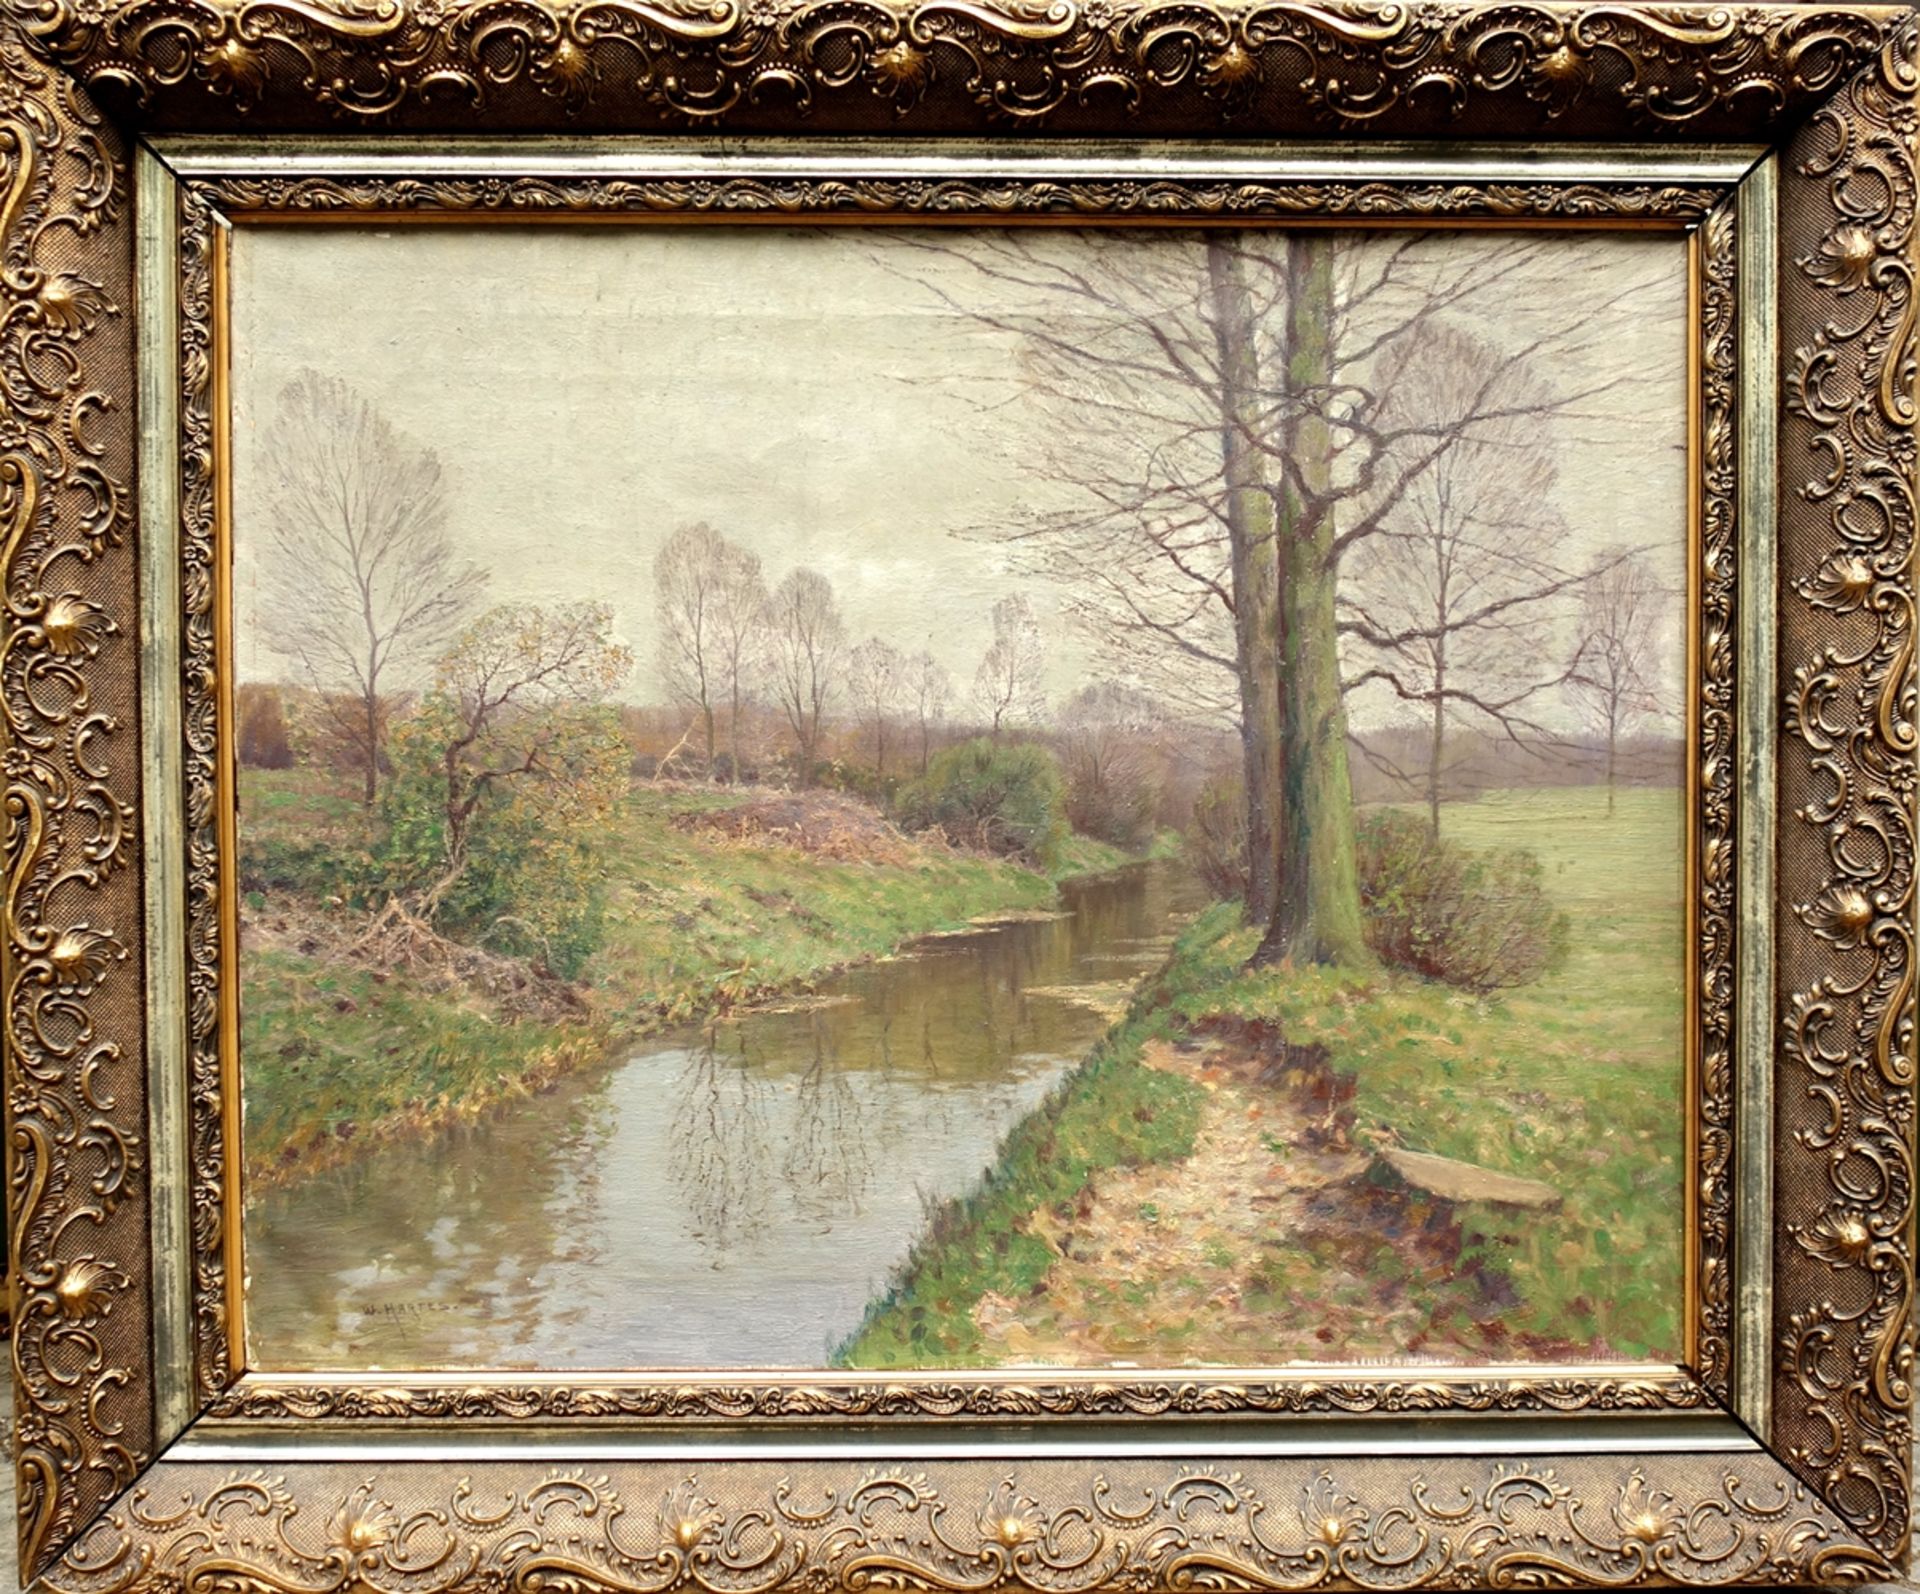 Wilhelm Hartes (1860-1926), "Ruhiger Flusslauf", Öl/Leinwand, unten links signiert "W. Hartes", HB